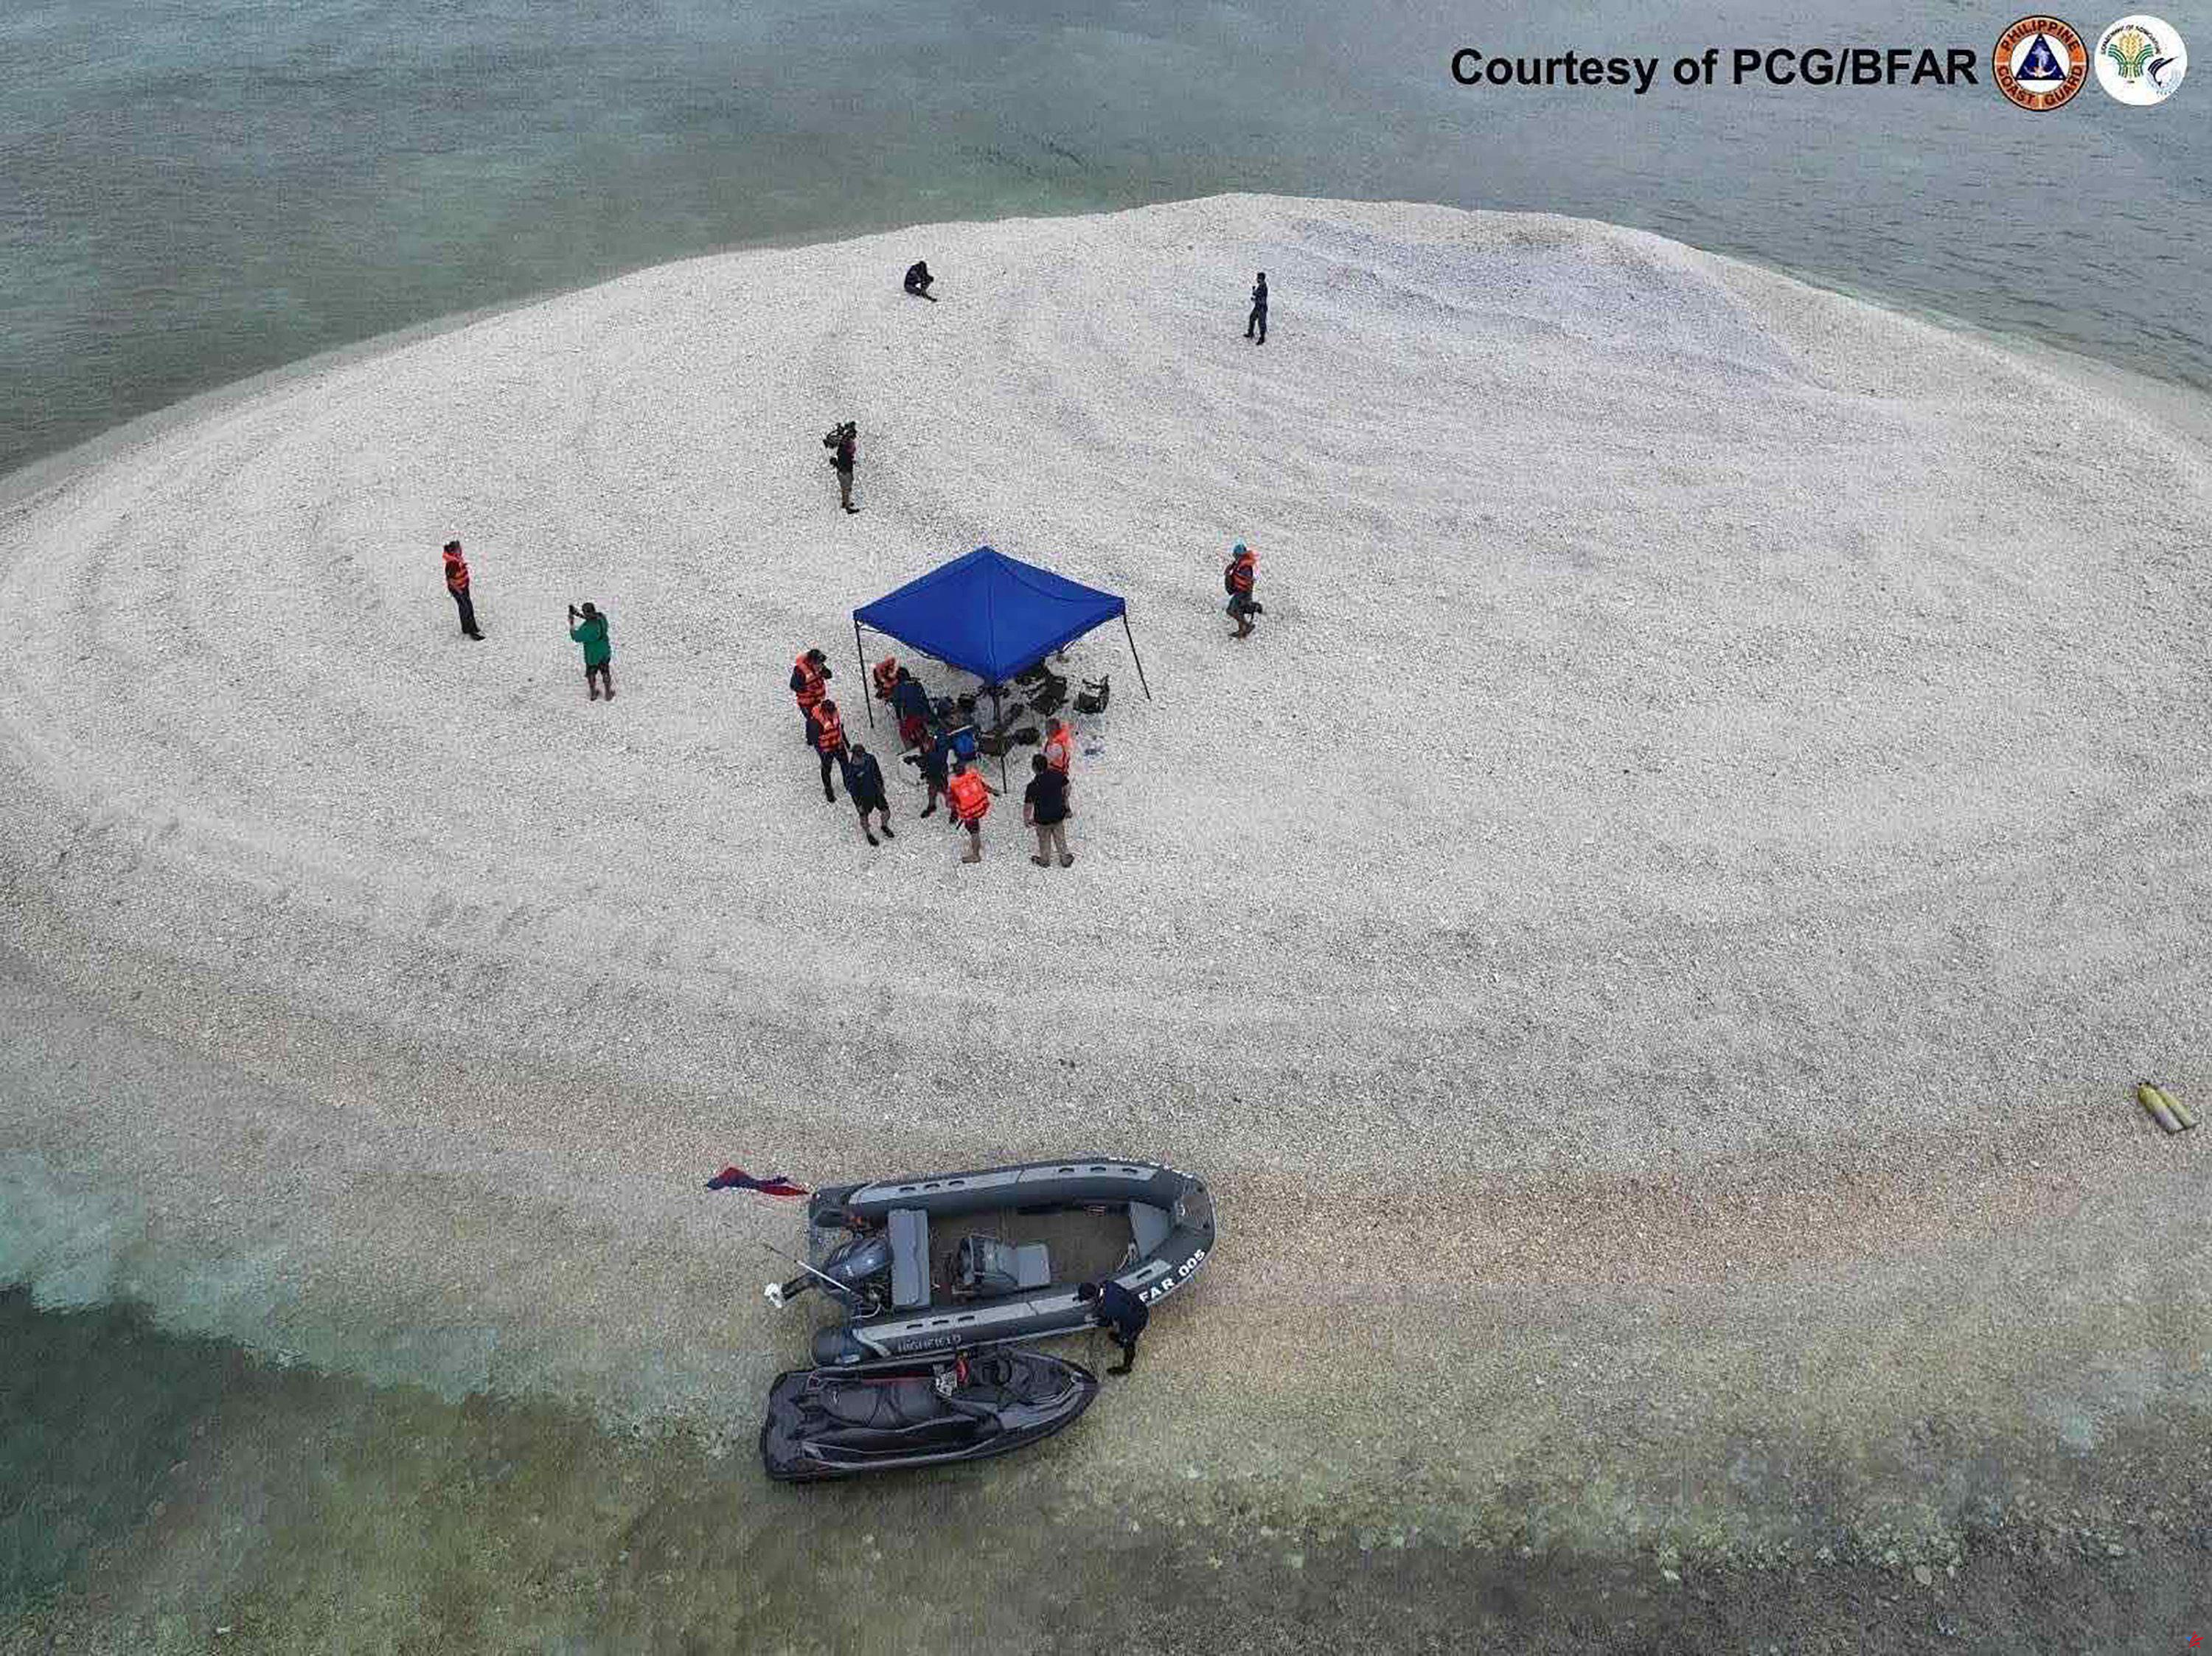 La guardia costera filipina acusa a China de "maniobras peligrosas" contra los científicos